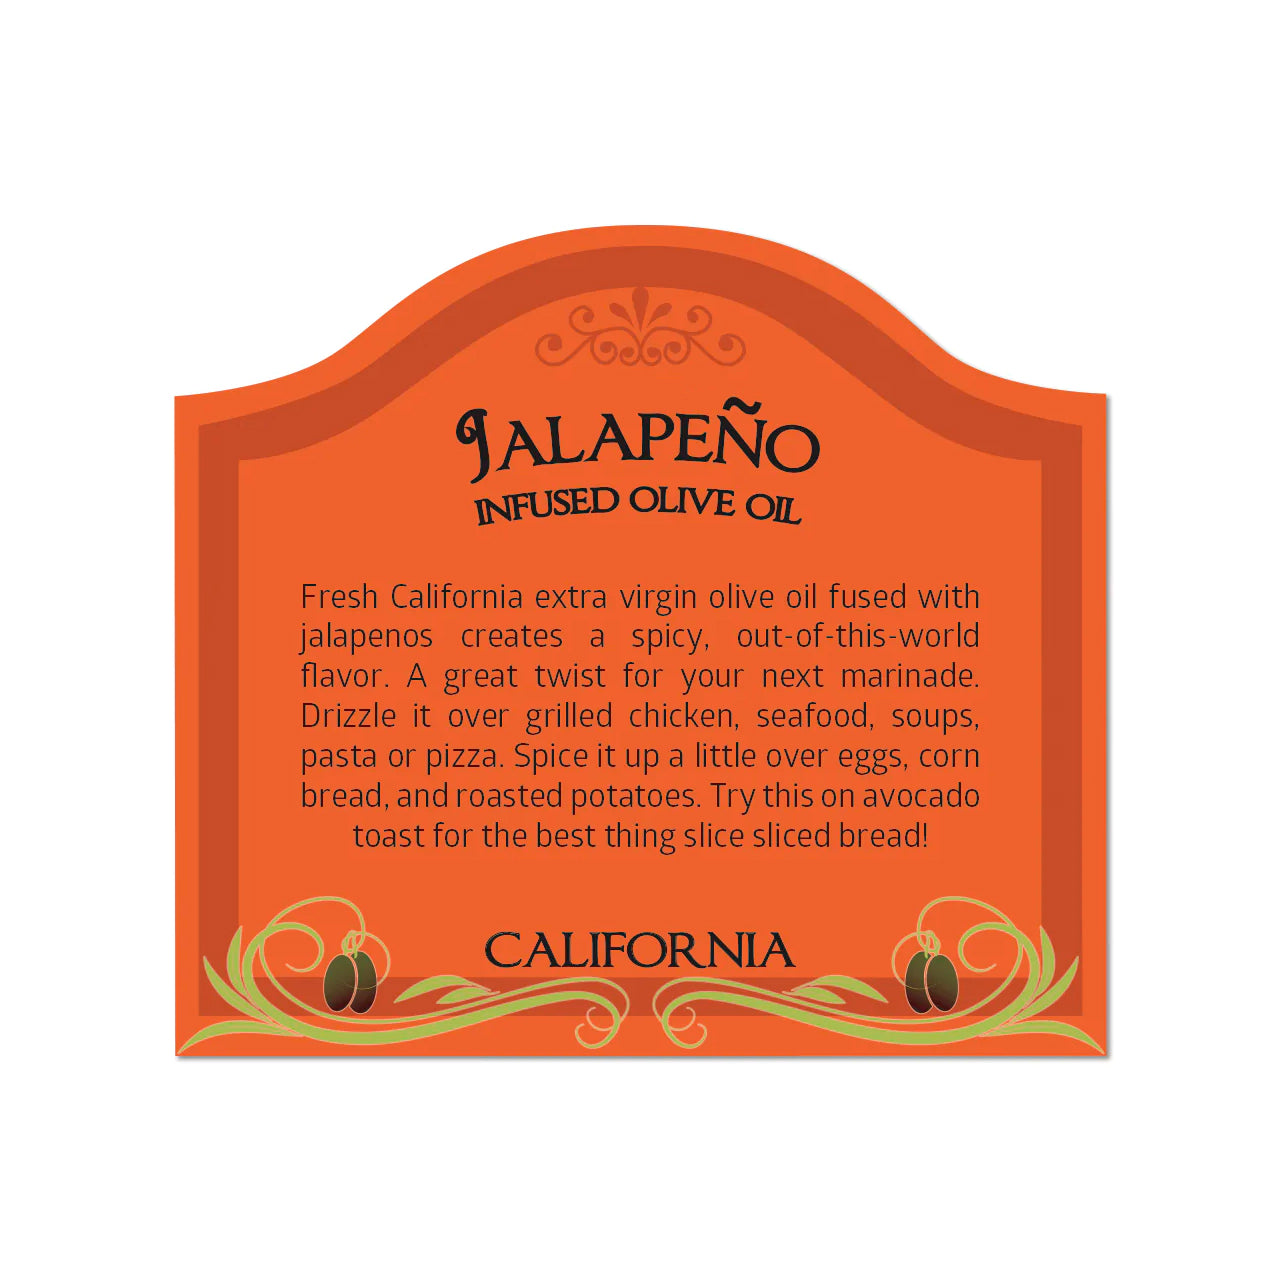 JALAPEÑO Infused Olive Oil - California